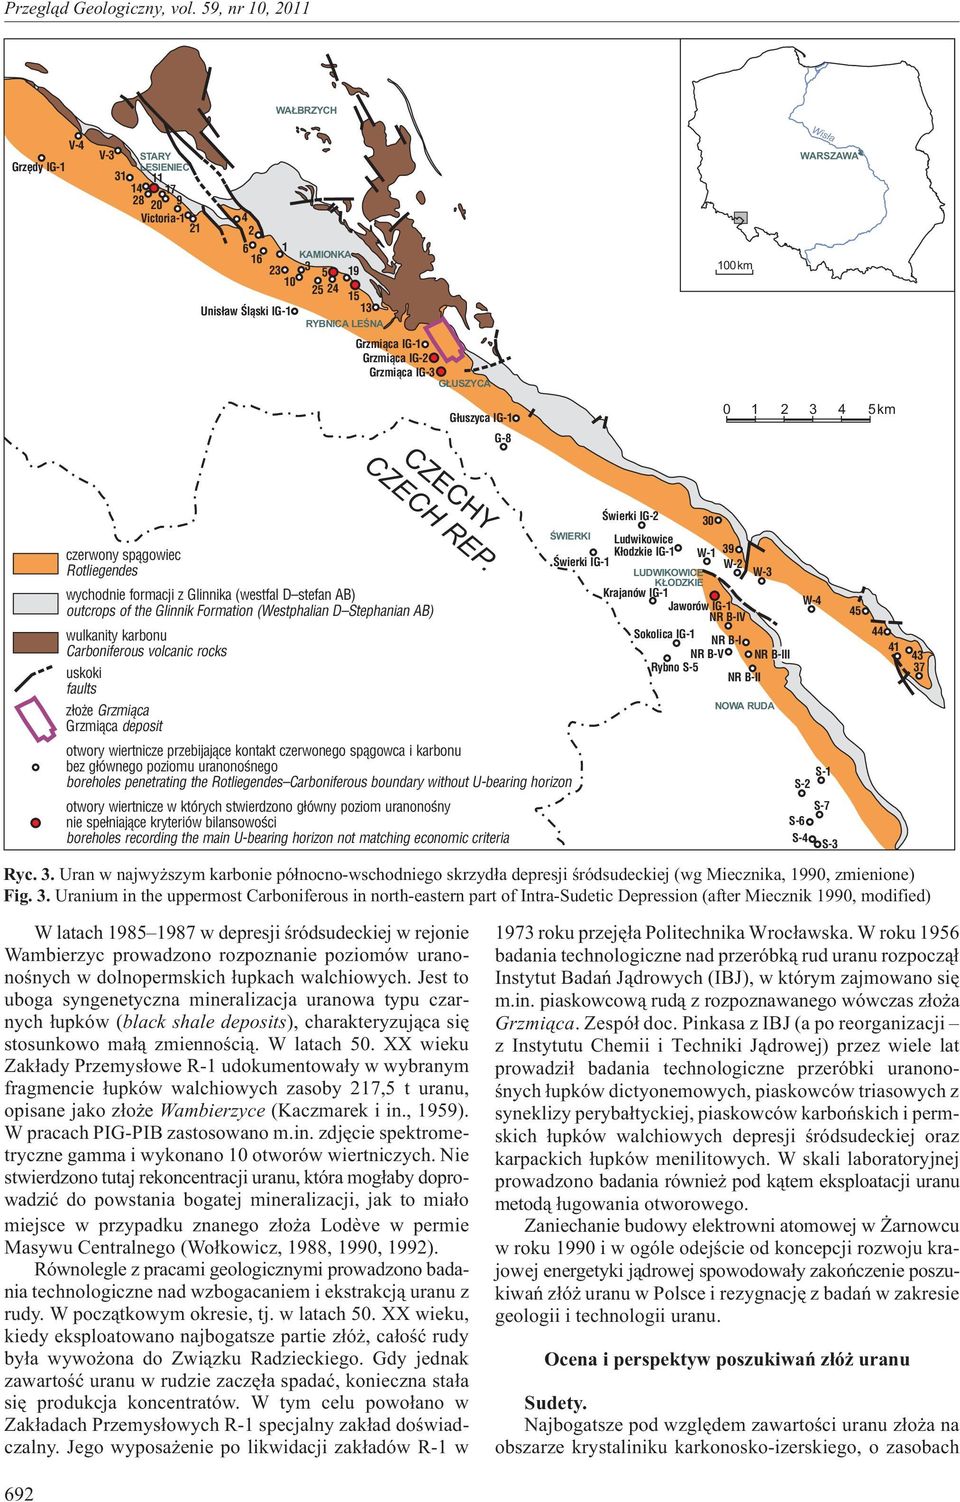 (Westphalian D Stephanian AB) wulkanity karbonu Carboniferous volcanic rocks uskoki faults z³o e Grzmi¹ca Grzmi¹ca deposit CZECH REP.